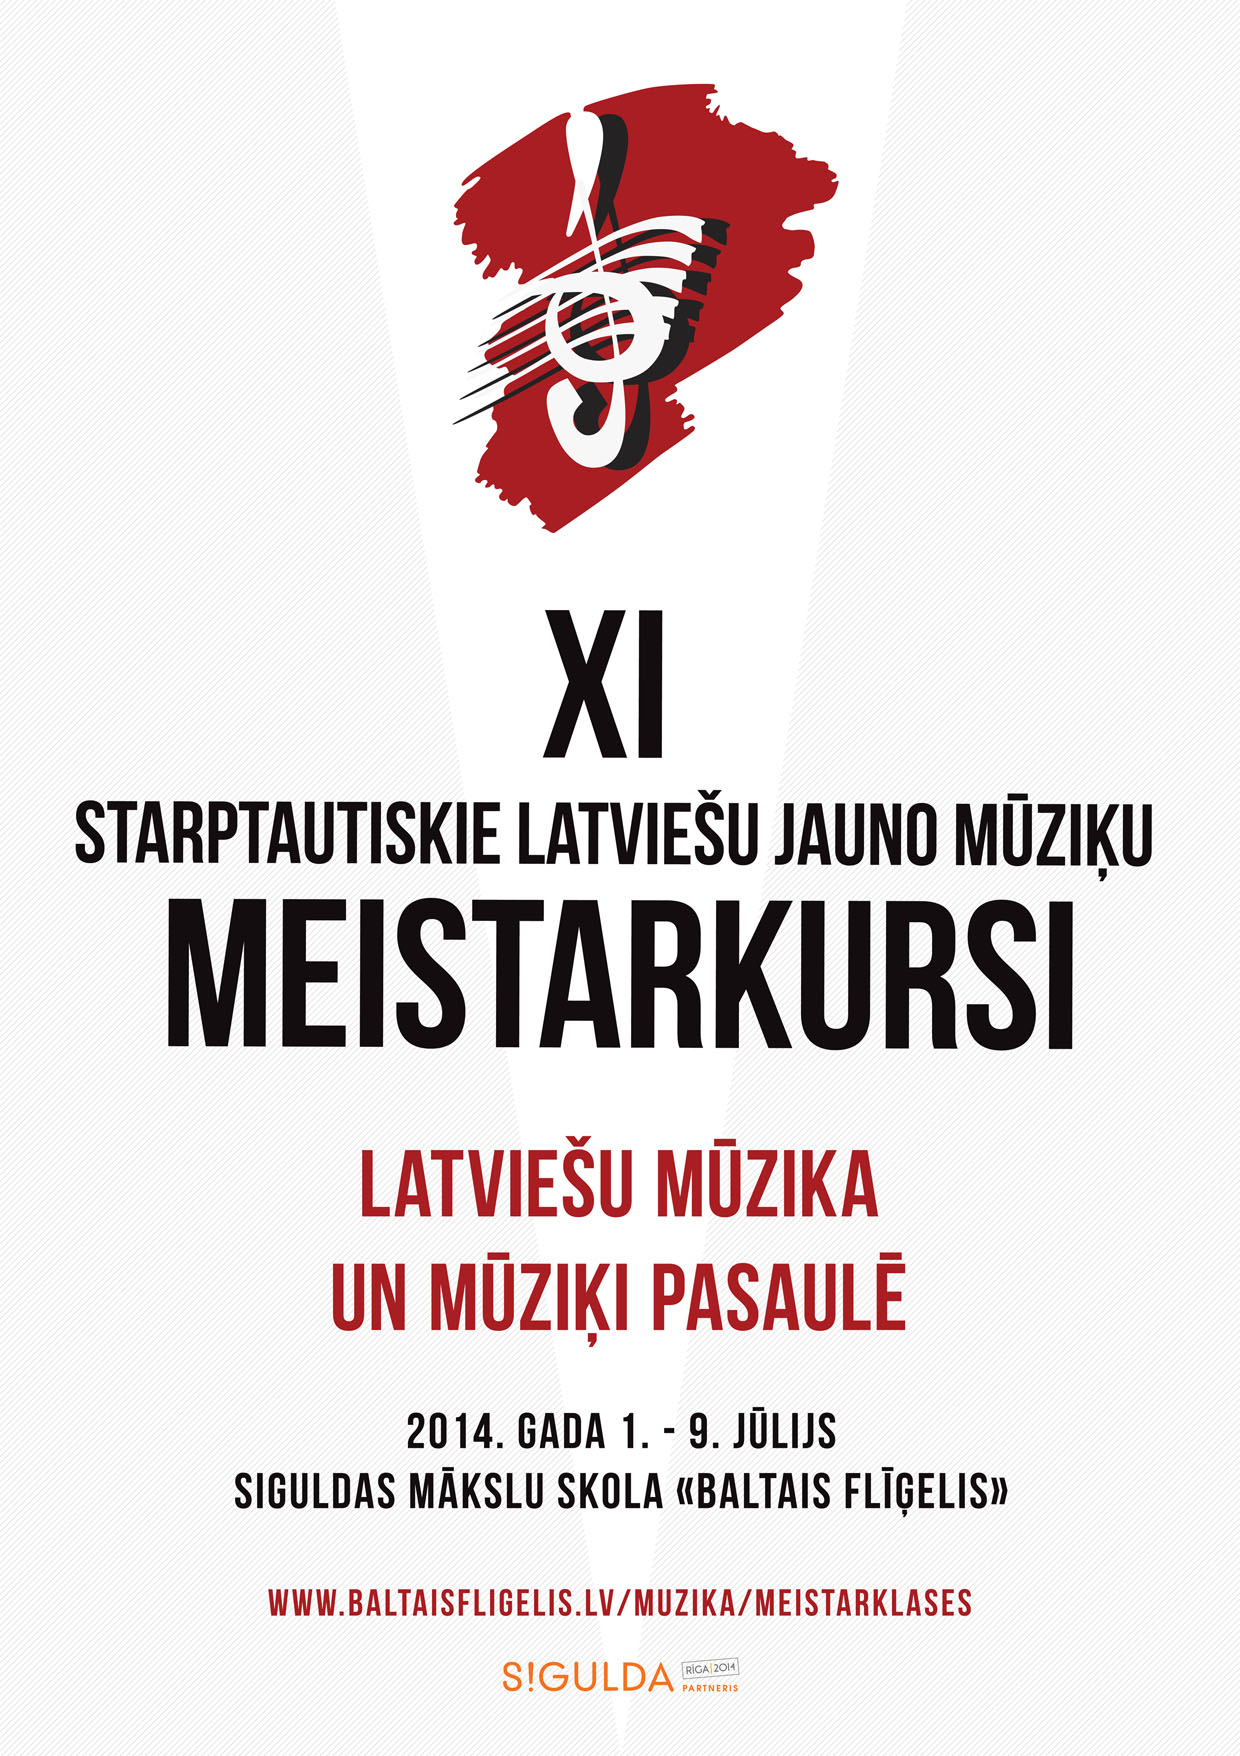 MEISTARKURSI-9-2014-drukai-A2